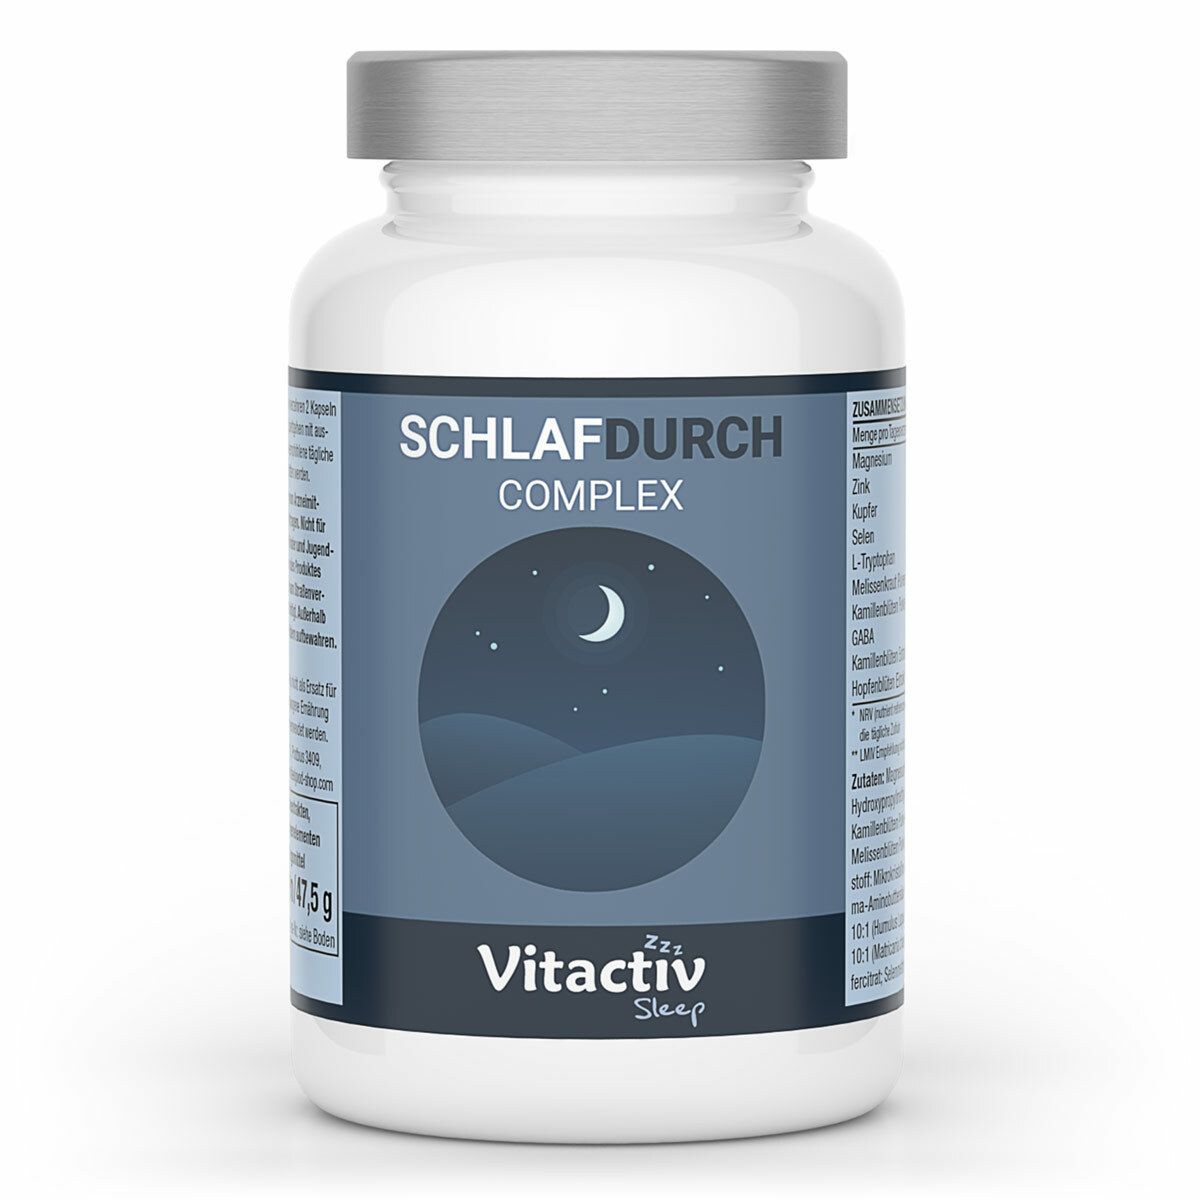 Vitactiv - Schlafdurch Komplex – Hormonfrei